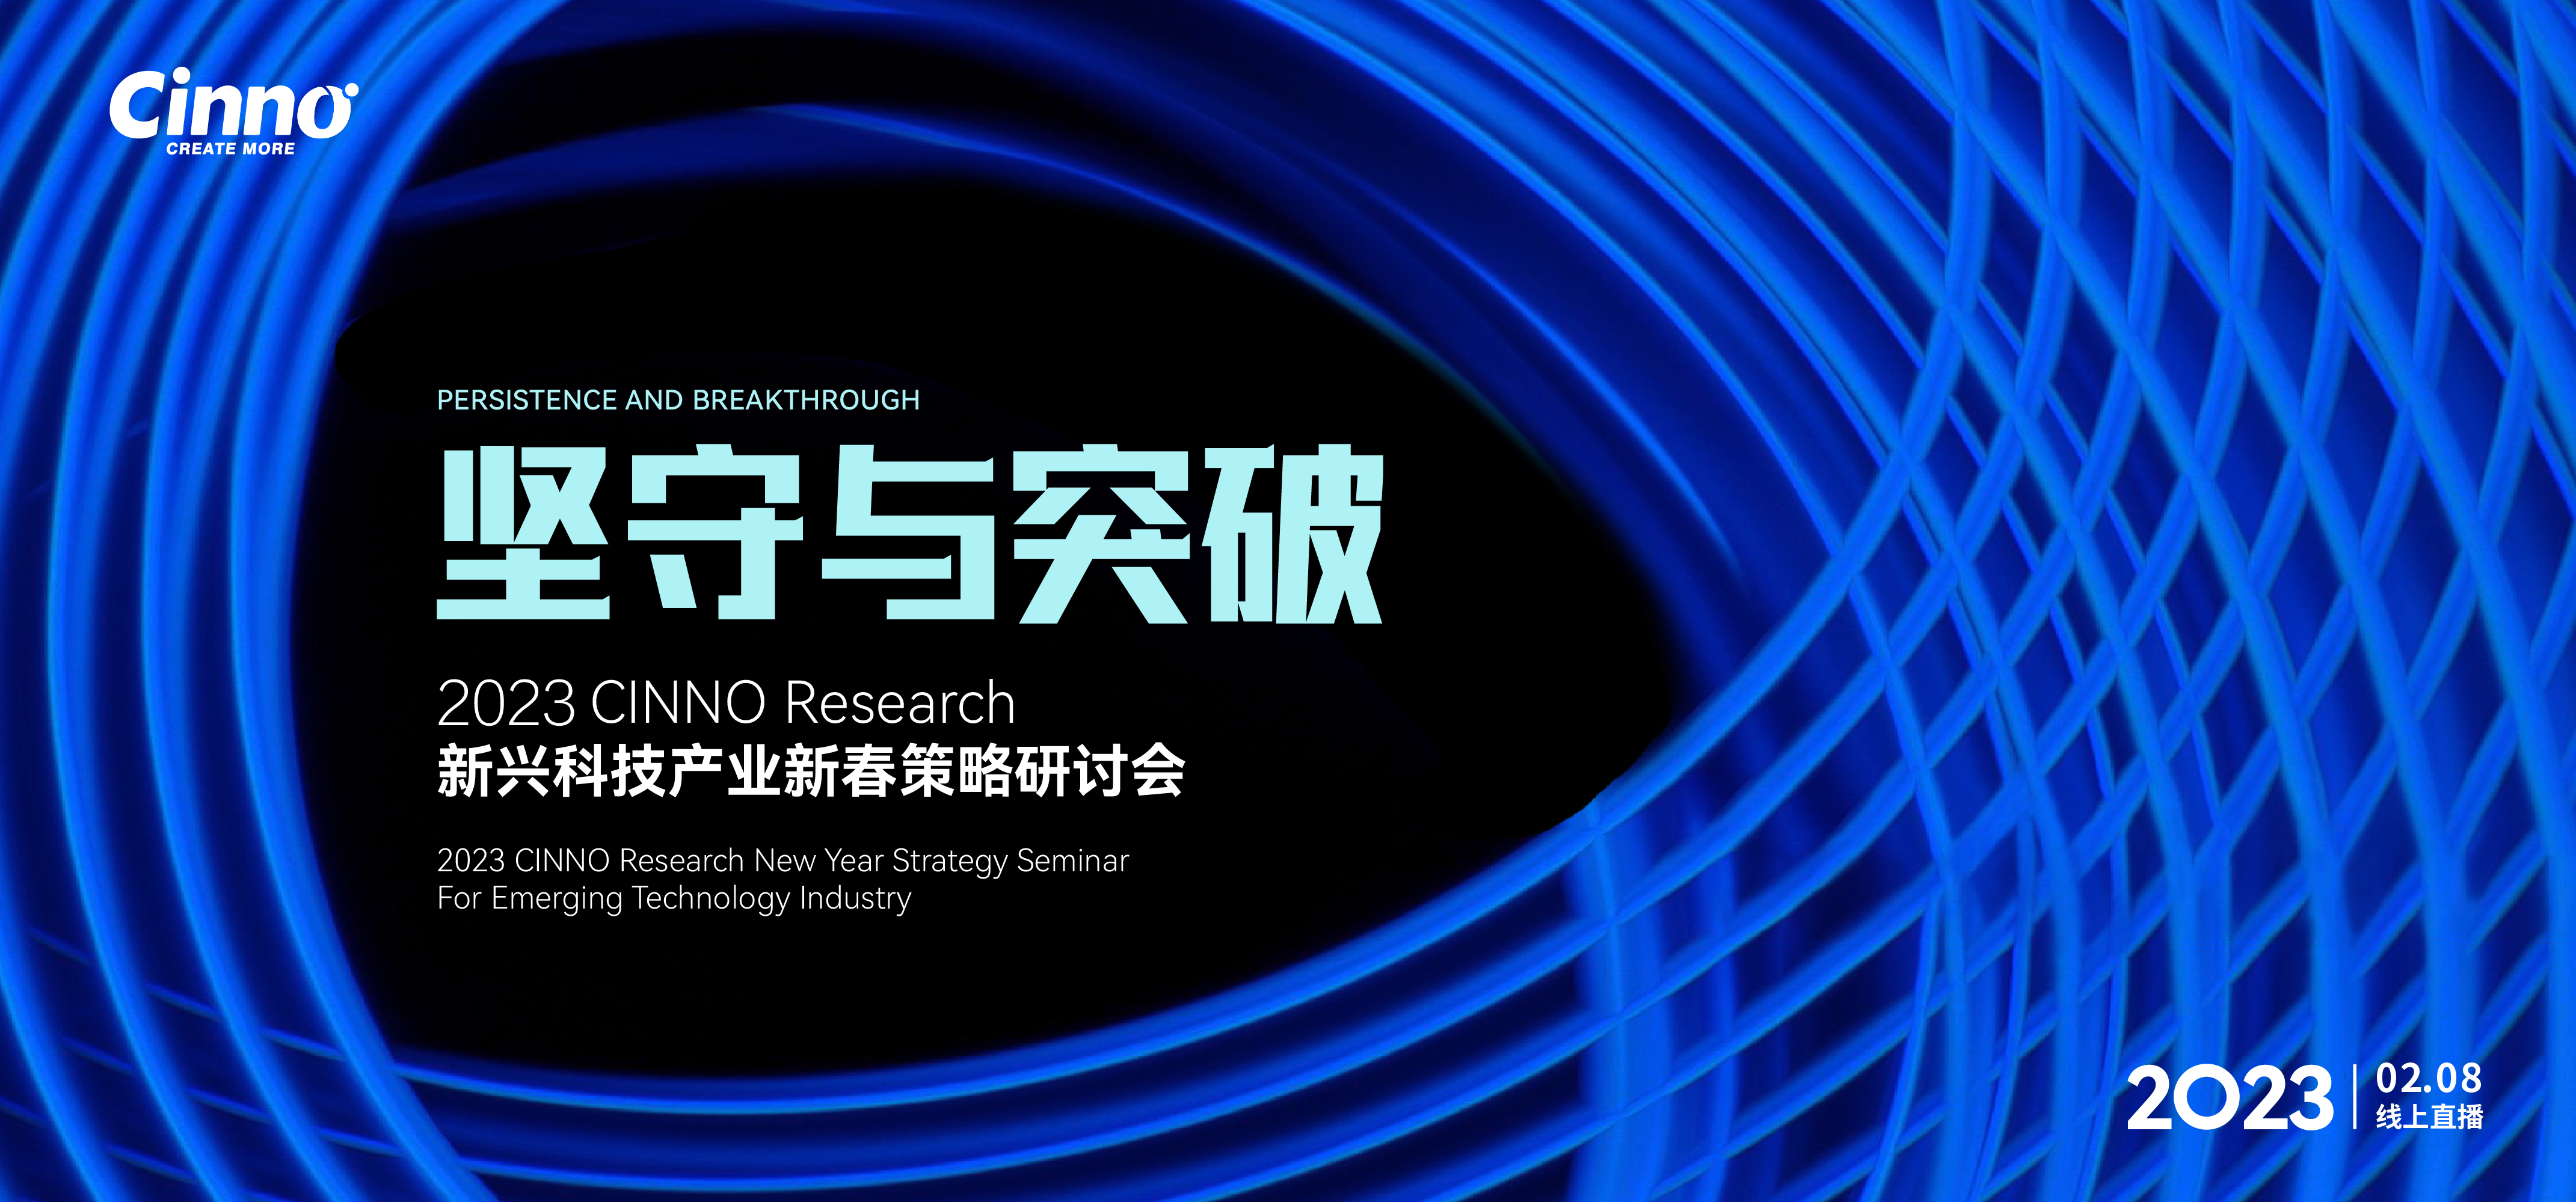 「坚守与突破」CINNO Research新兴科技产业新春策略研讨会成功举办